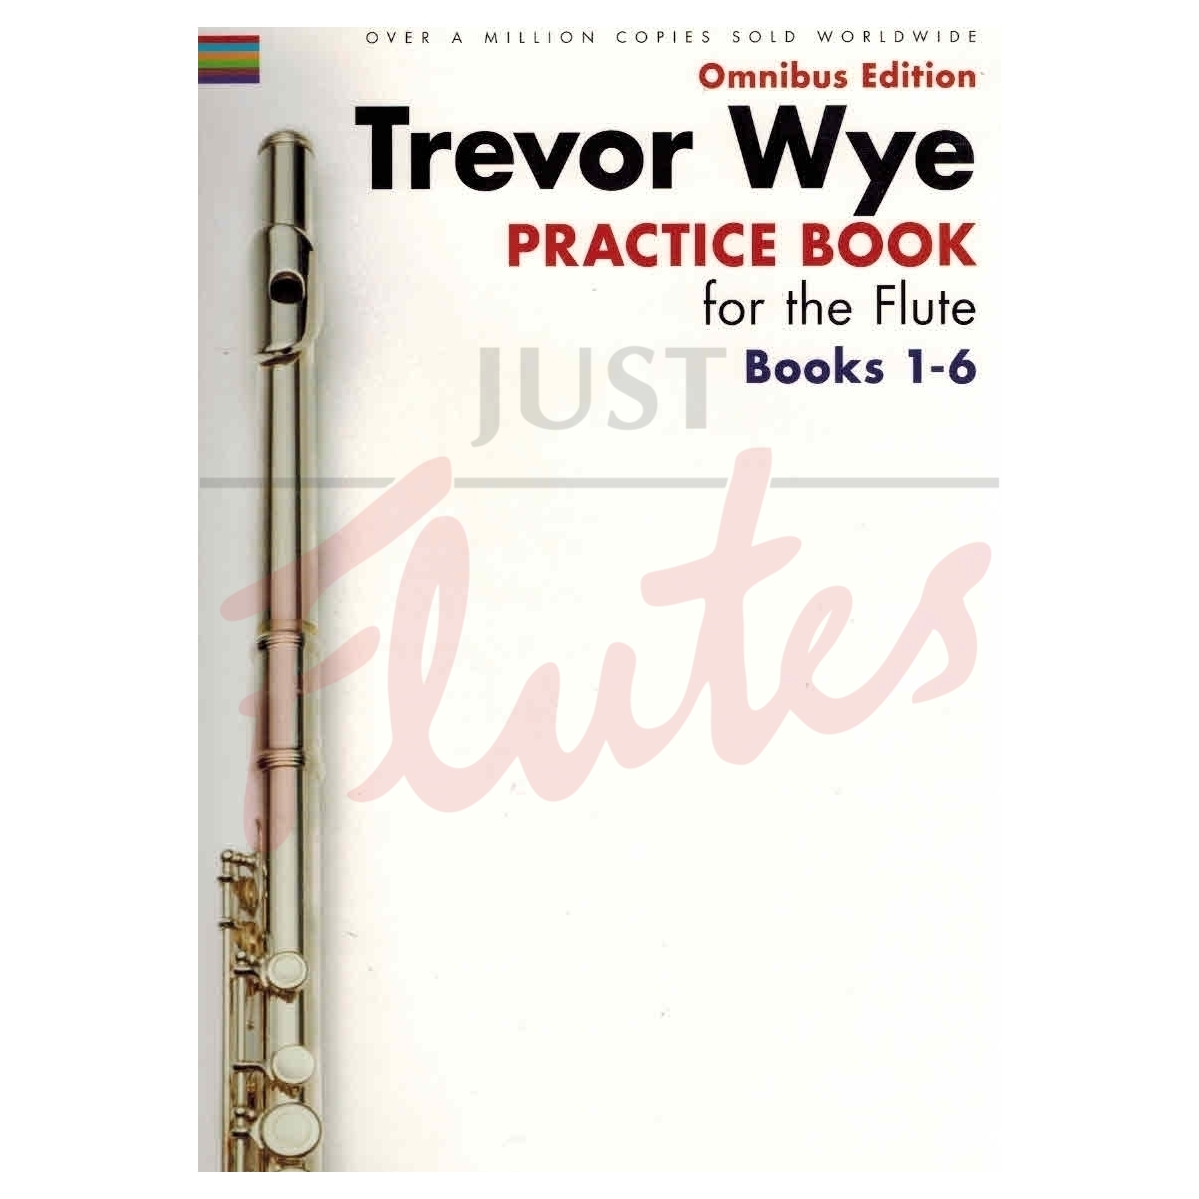 Practice Book for Flute: Omnibus Edition, Books 1-6